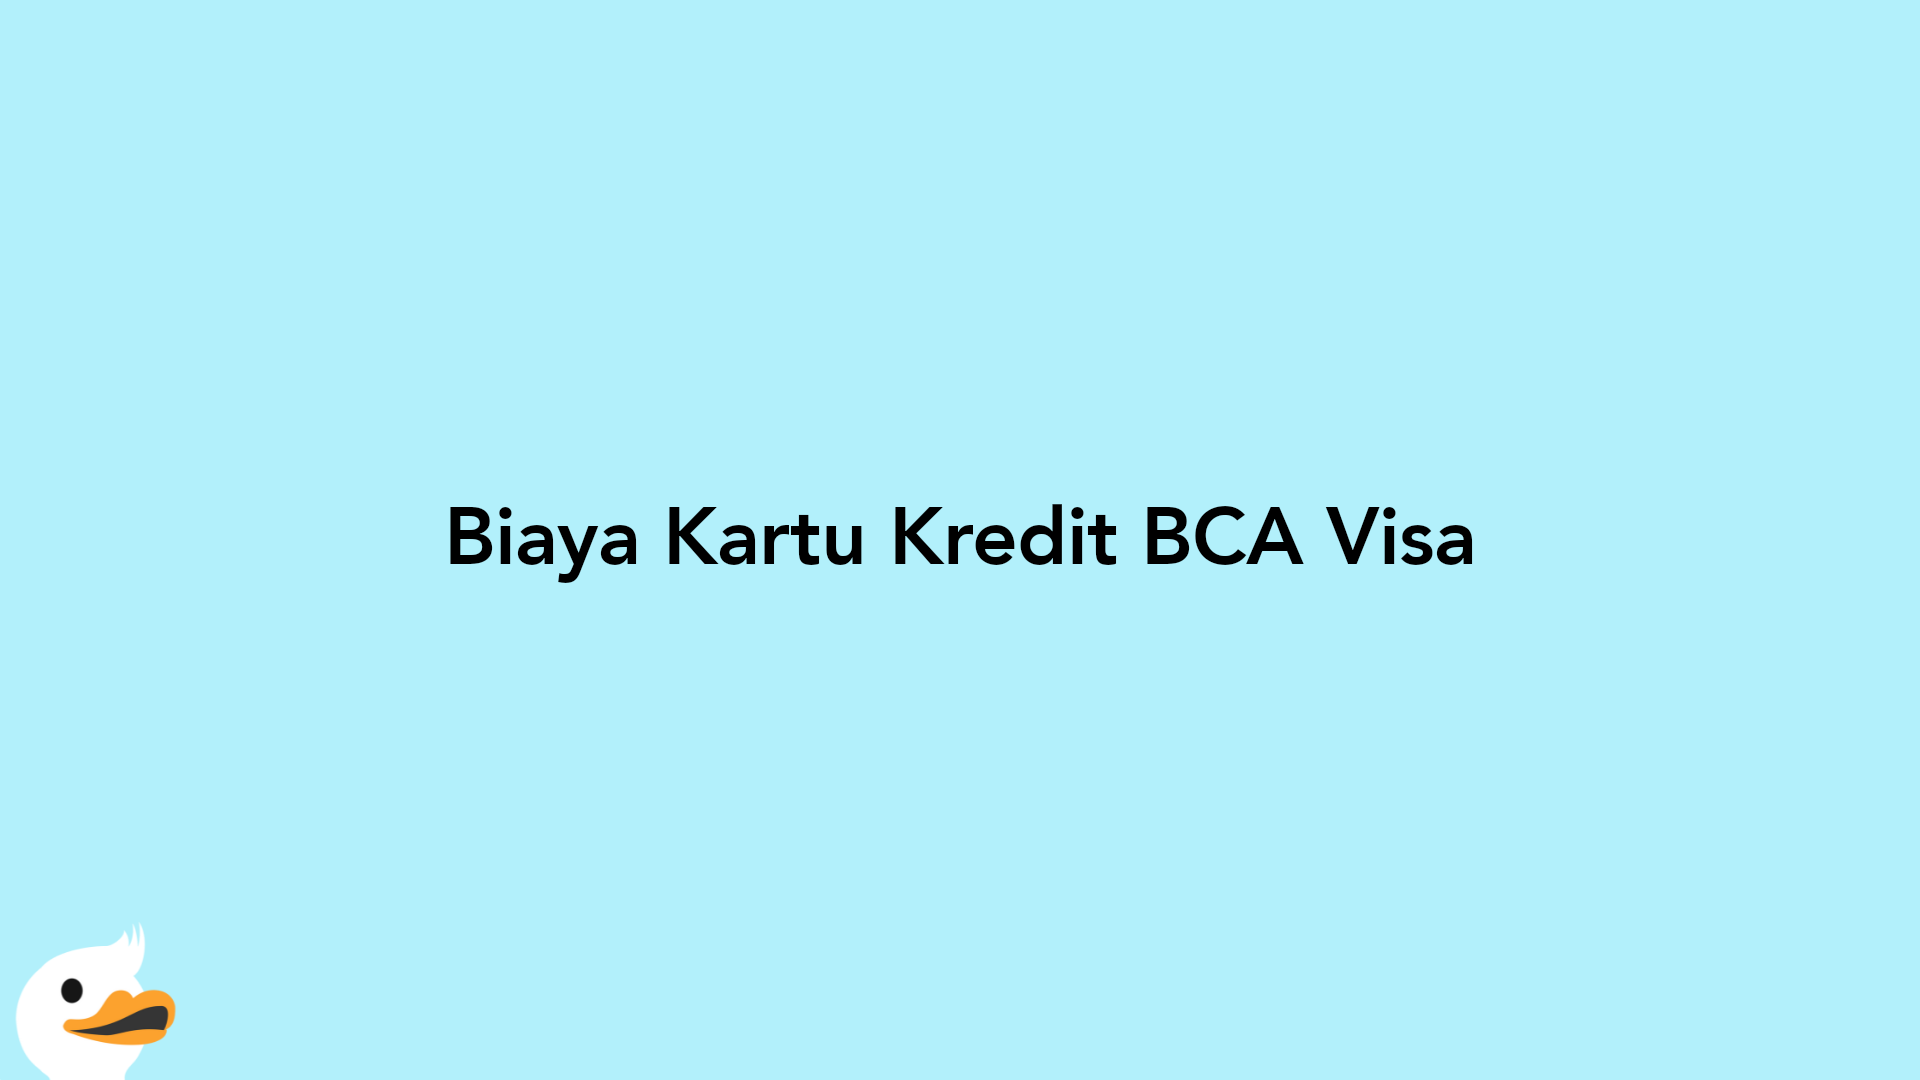 Biaya Kartu Kredit BCA Visa